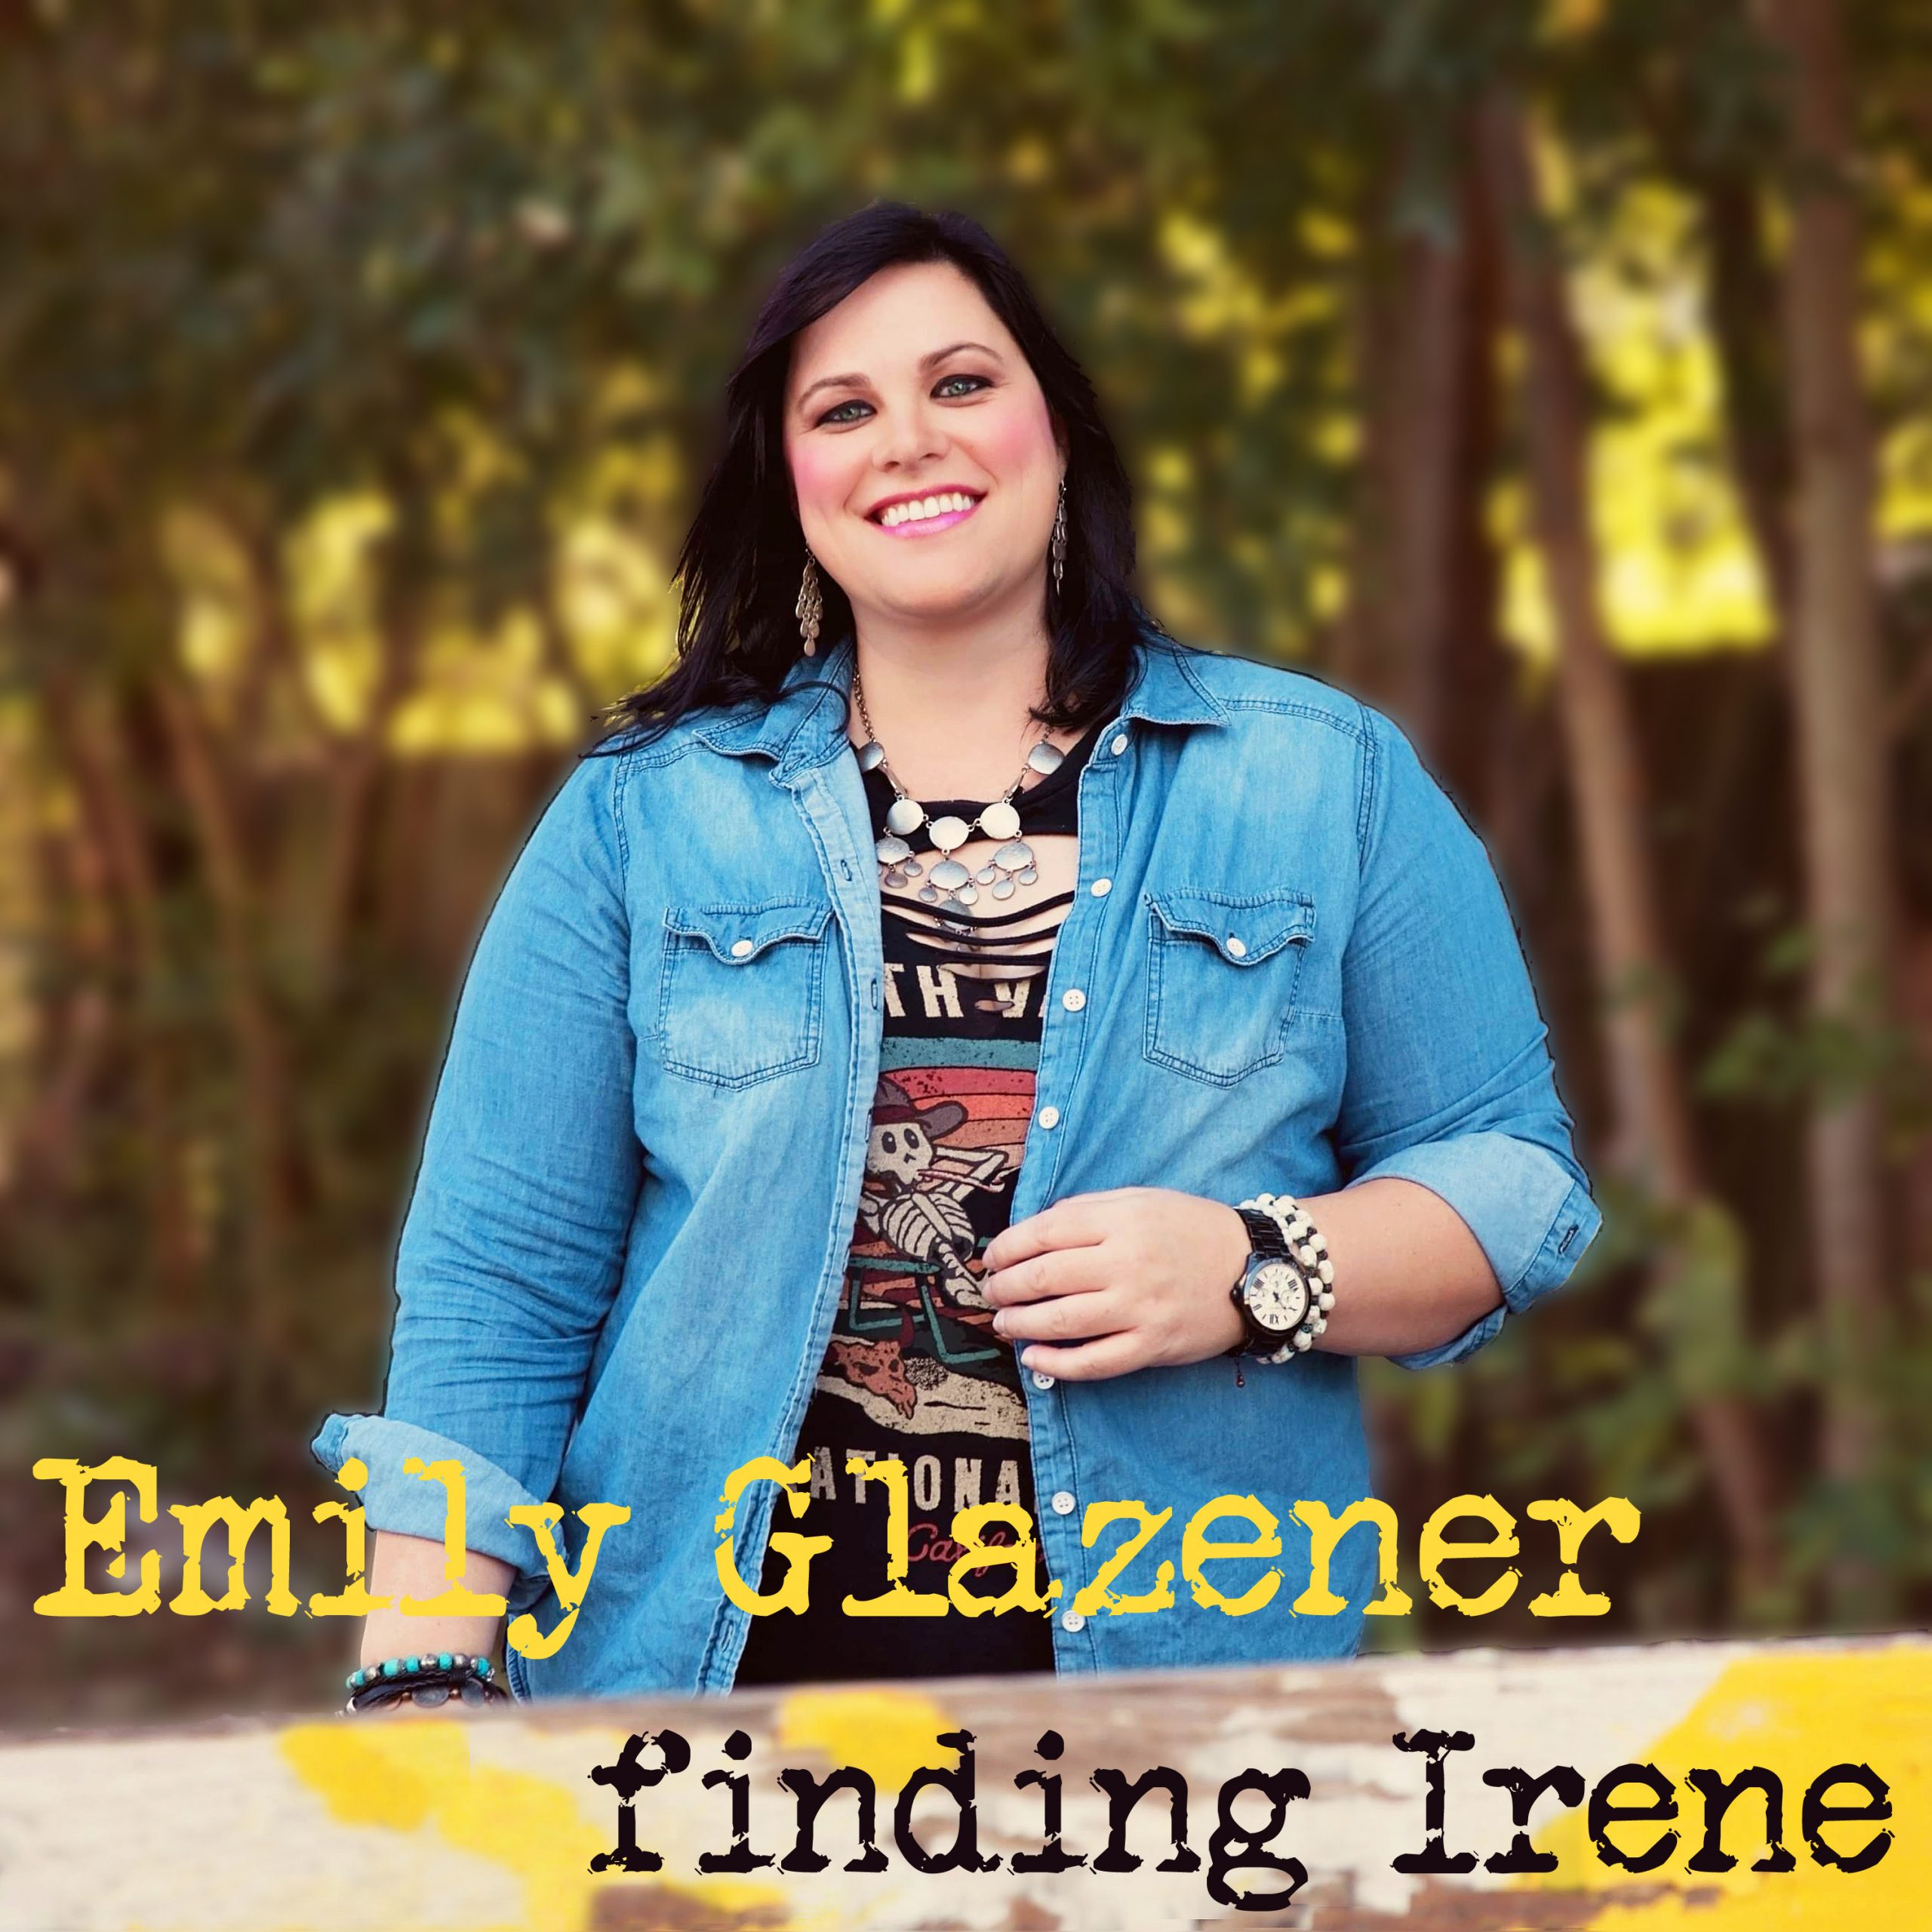 Finding Irene by Emily Glazener